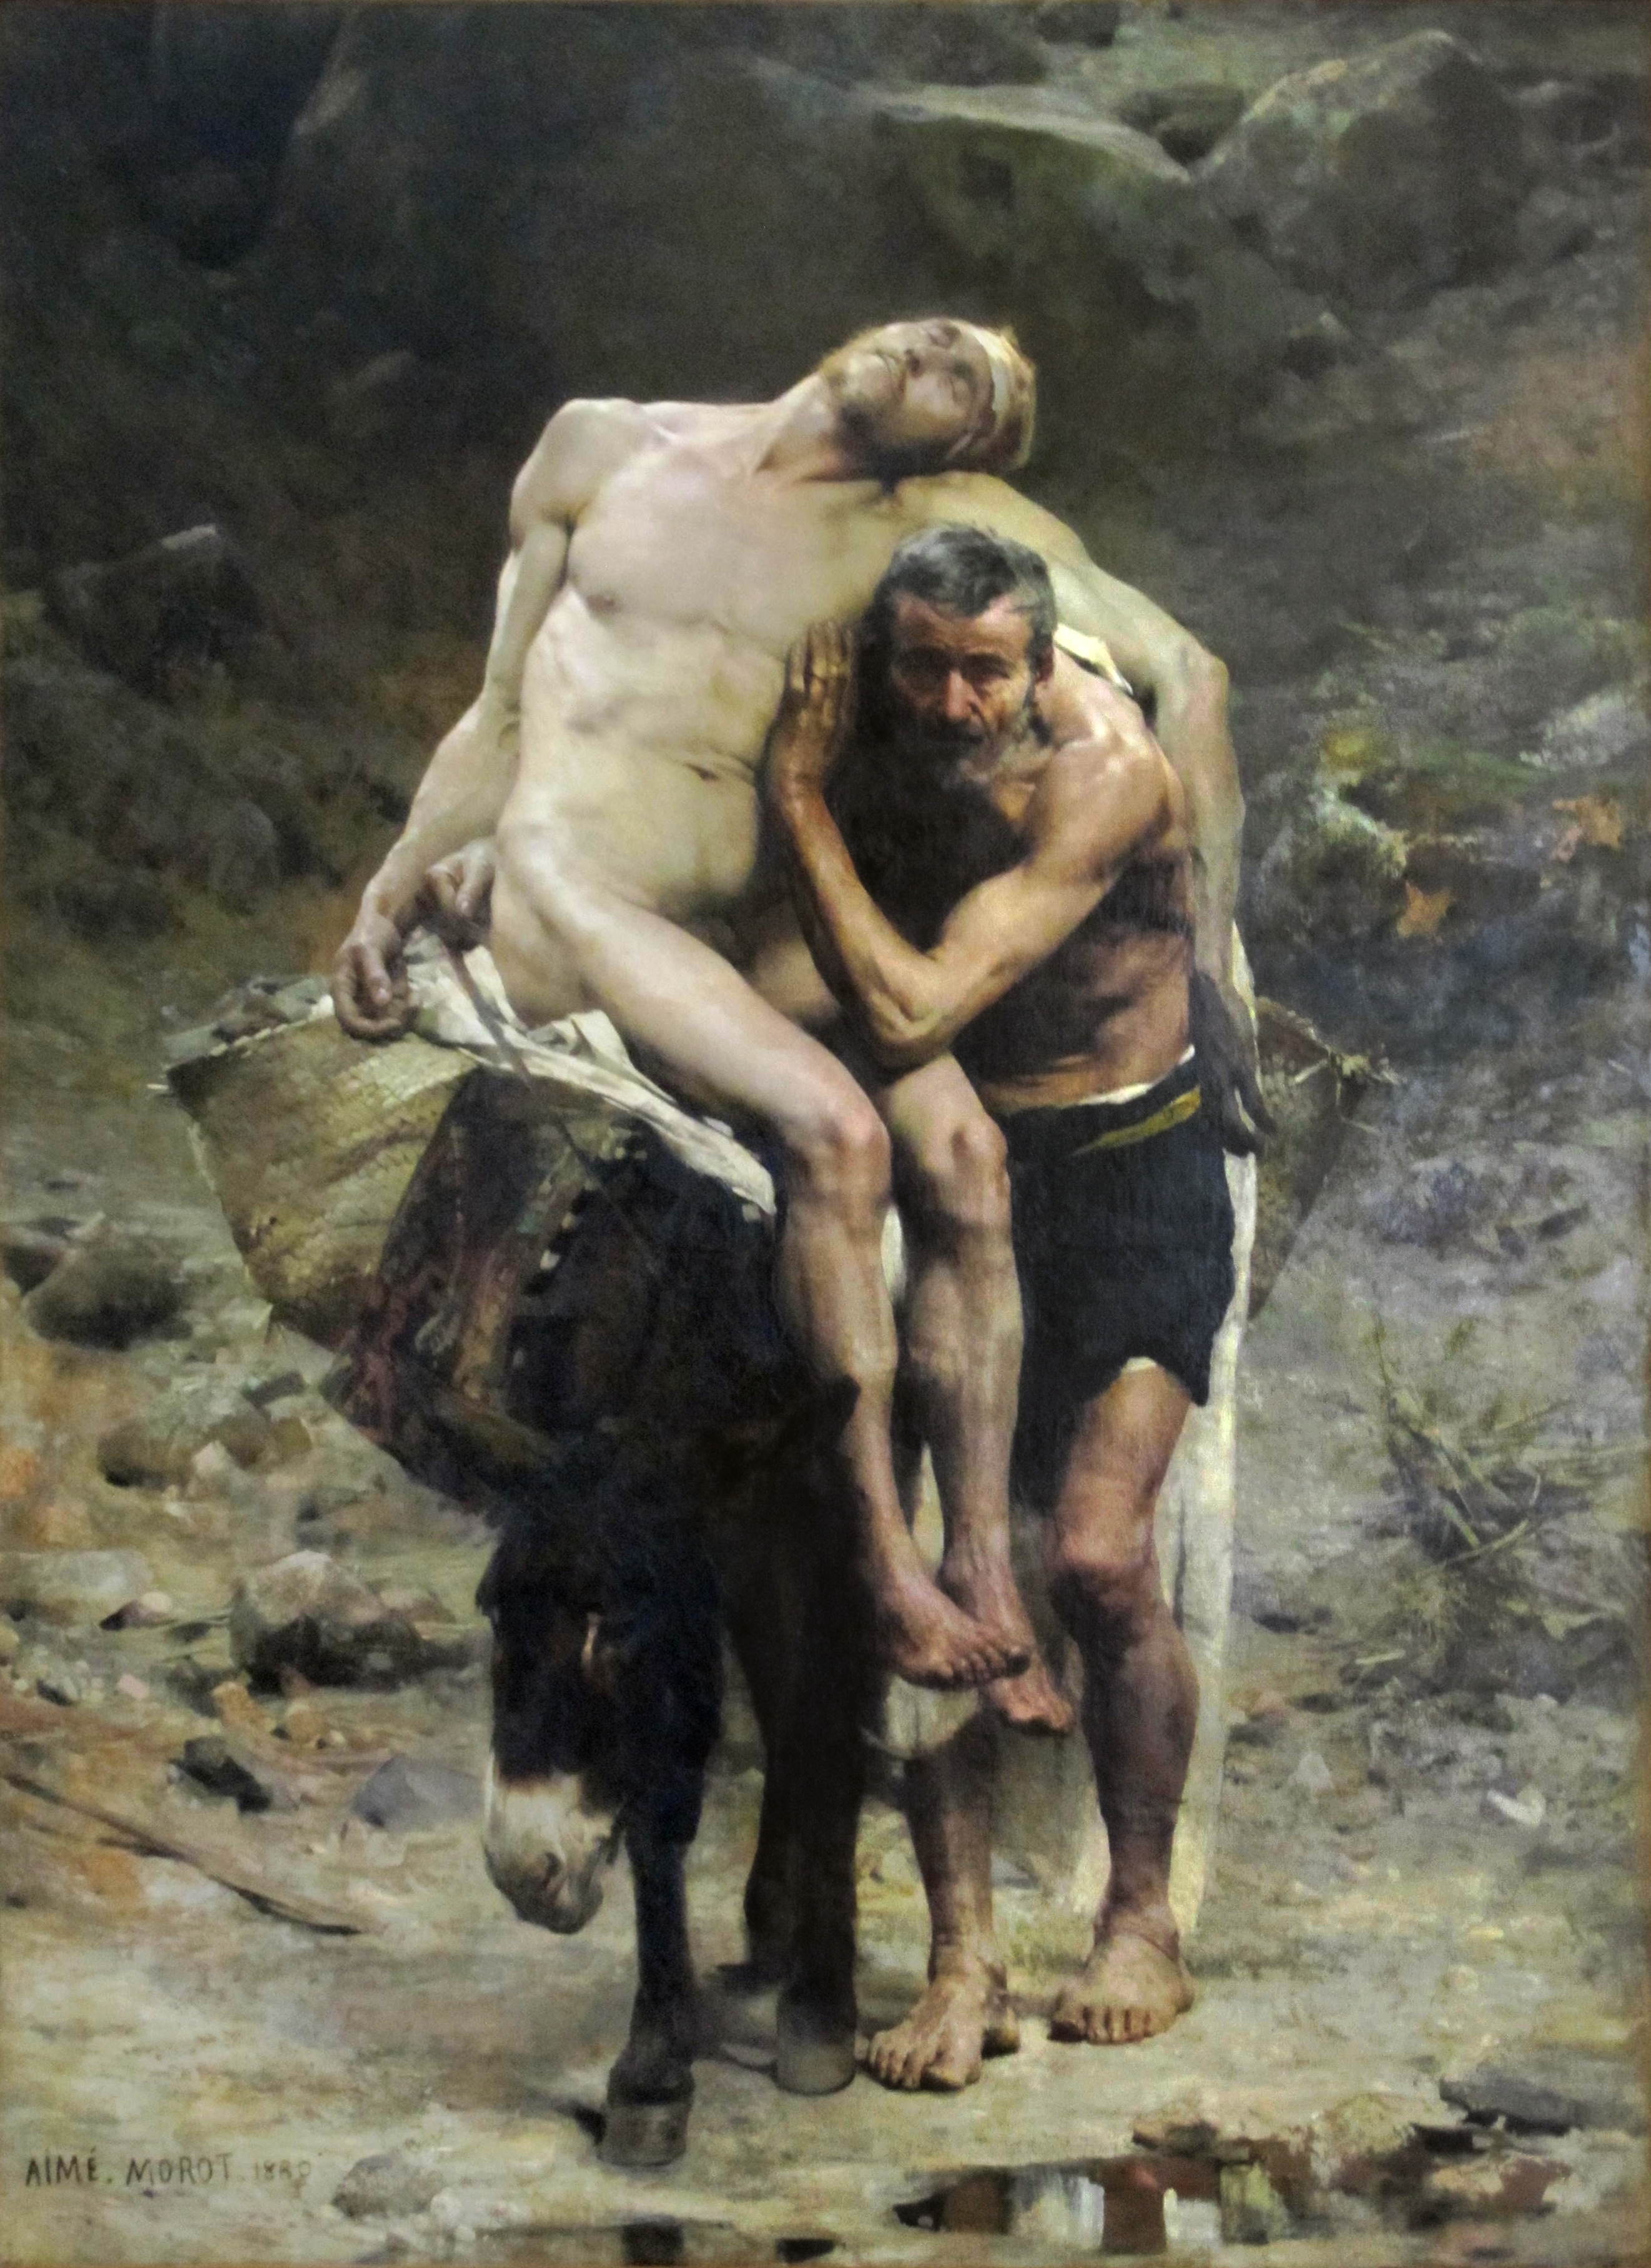 Aimé Moror, "The Good Samaritan" (1880)